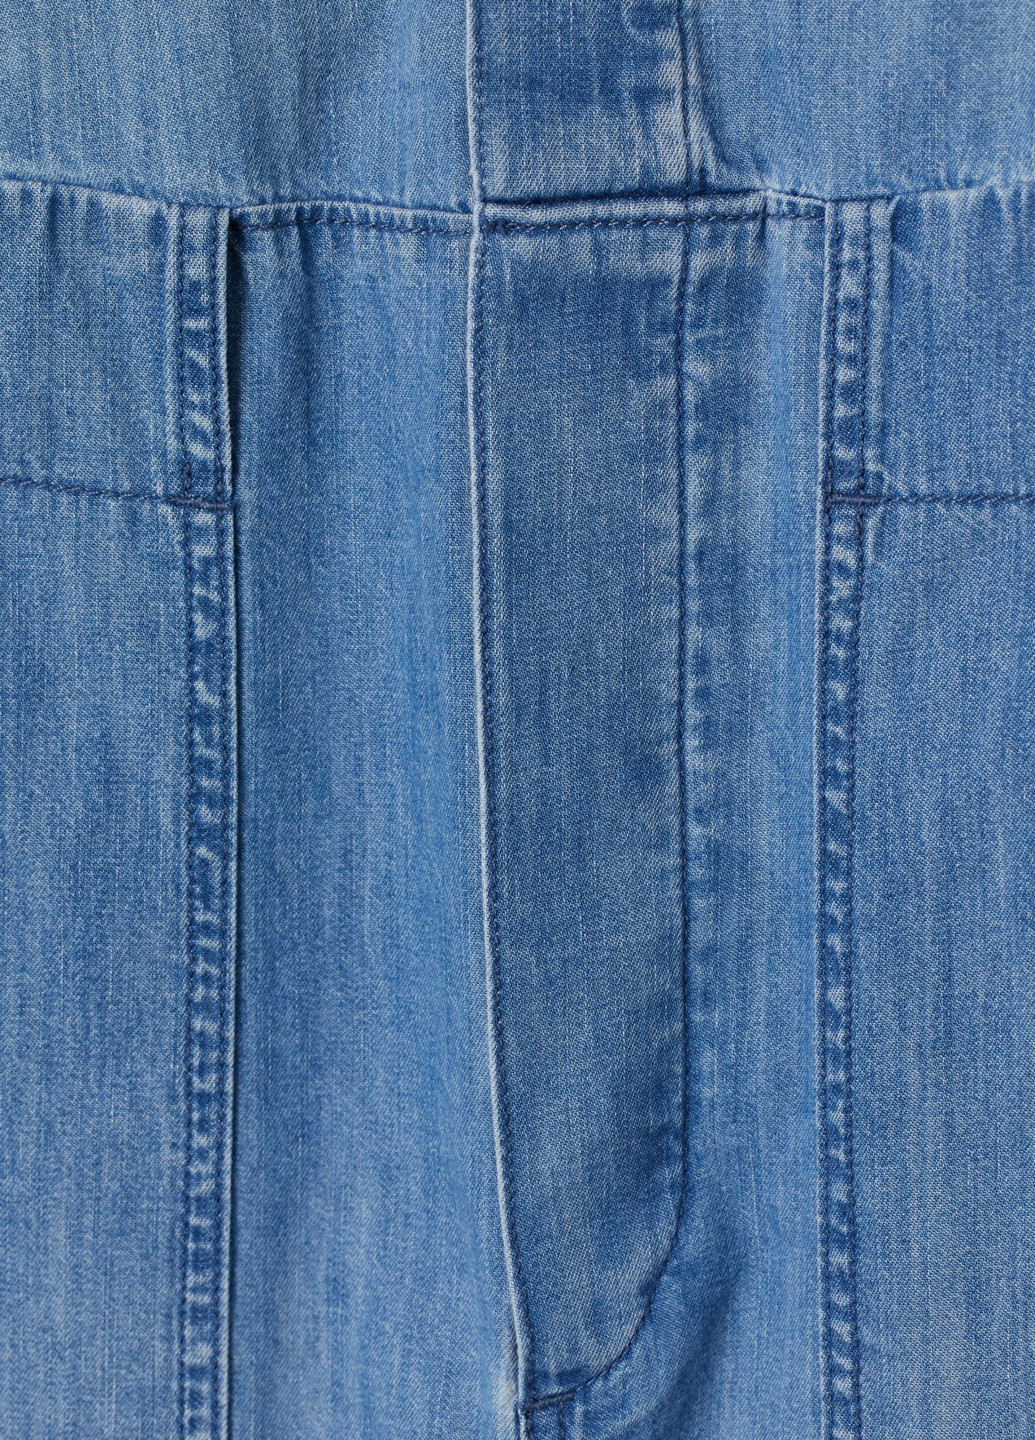 Комбинезон H&M комбинезон-брюки однотонный тёмно-голубой денил, кэжуал хлопок